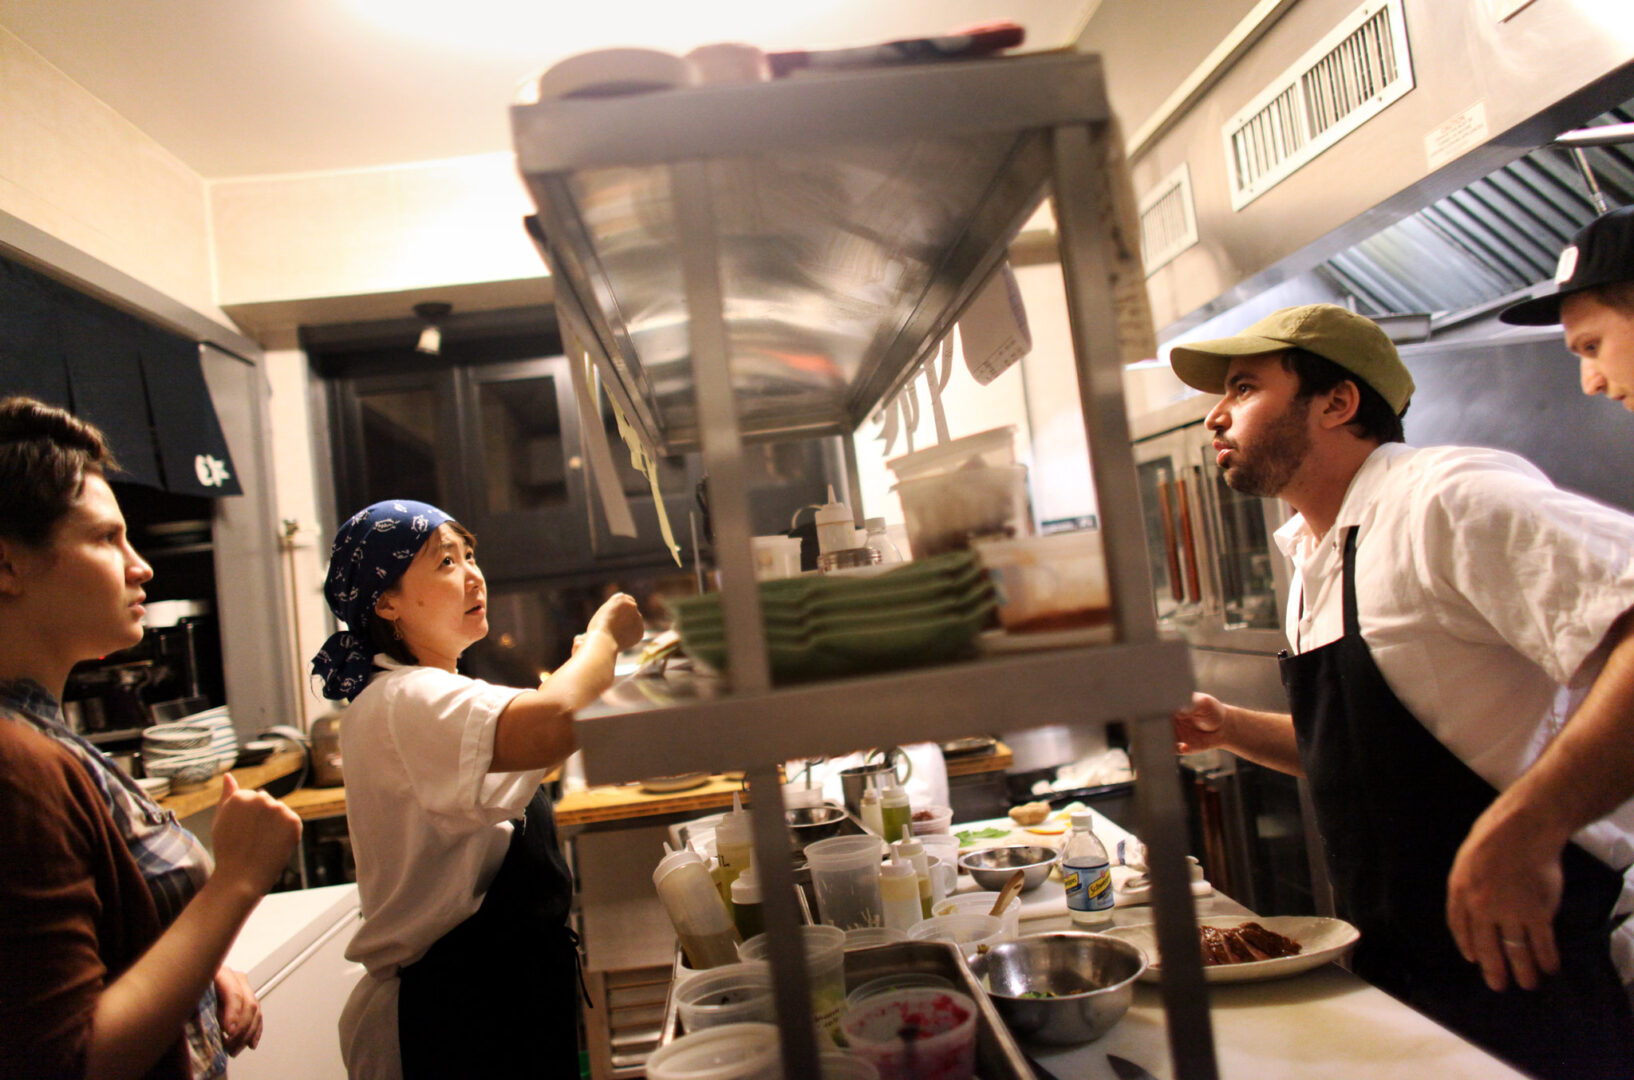 סושי קניידלך: היא יפנית, הוא יהודי, יחד, הם מנהלים מטבח יפני-יהודי